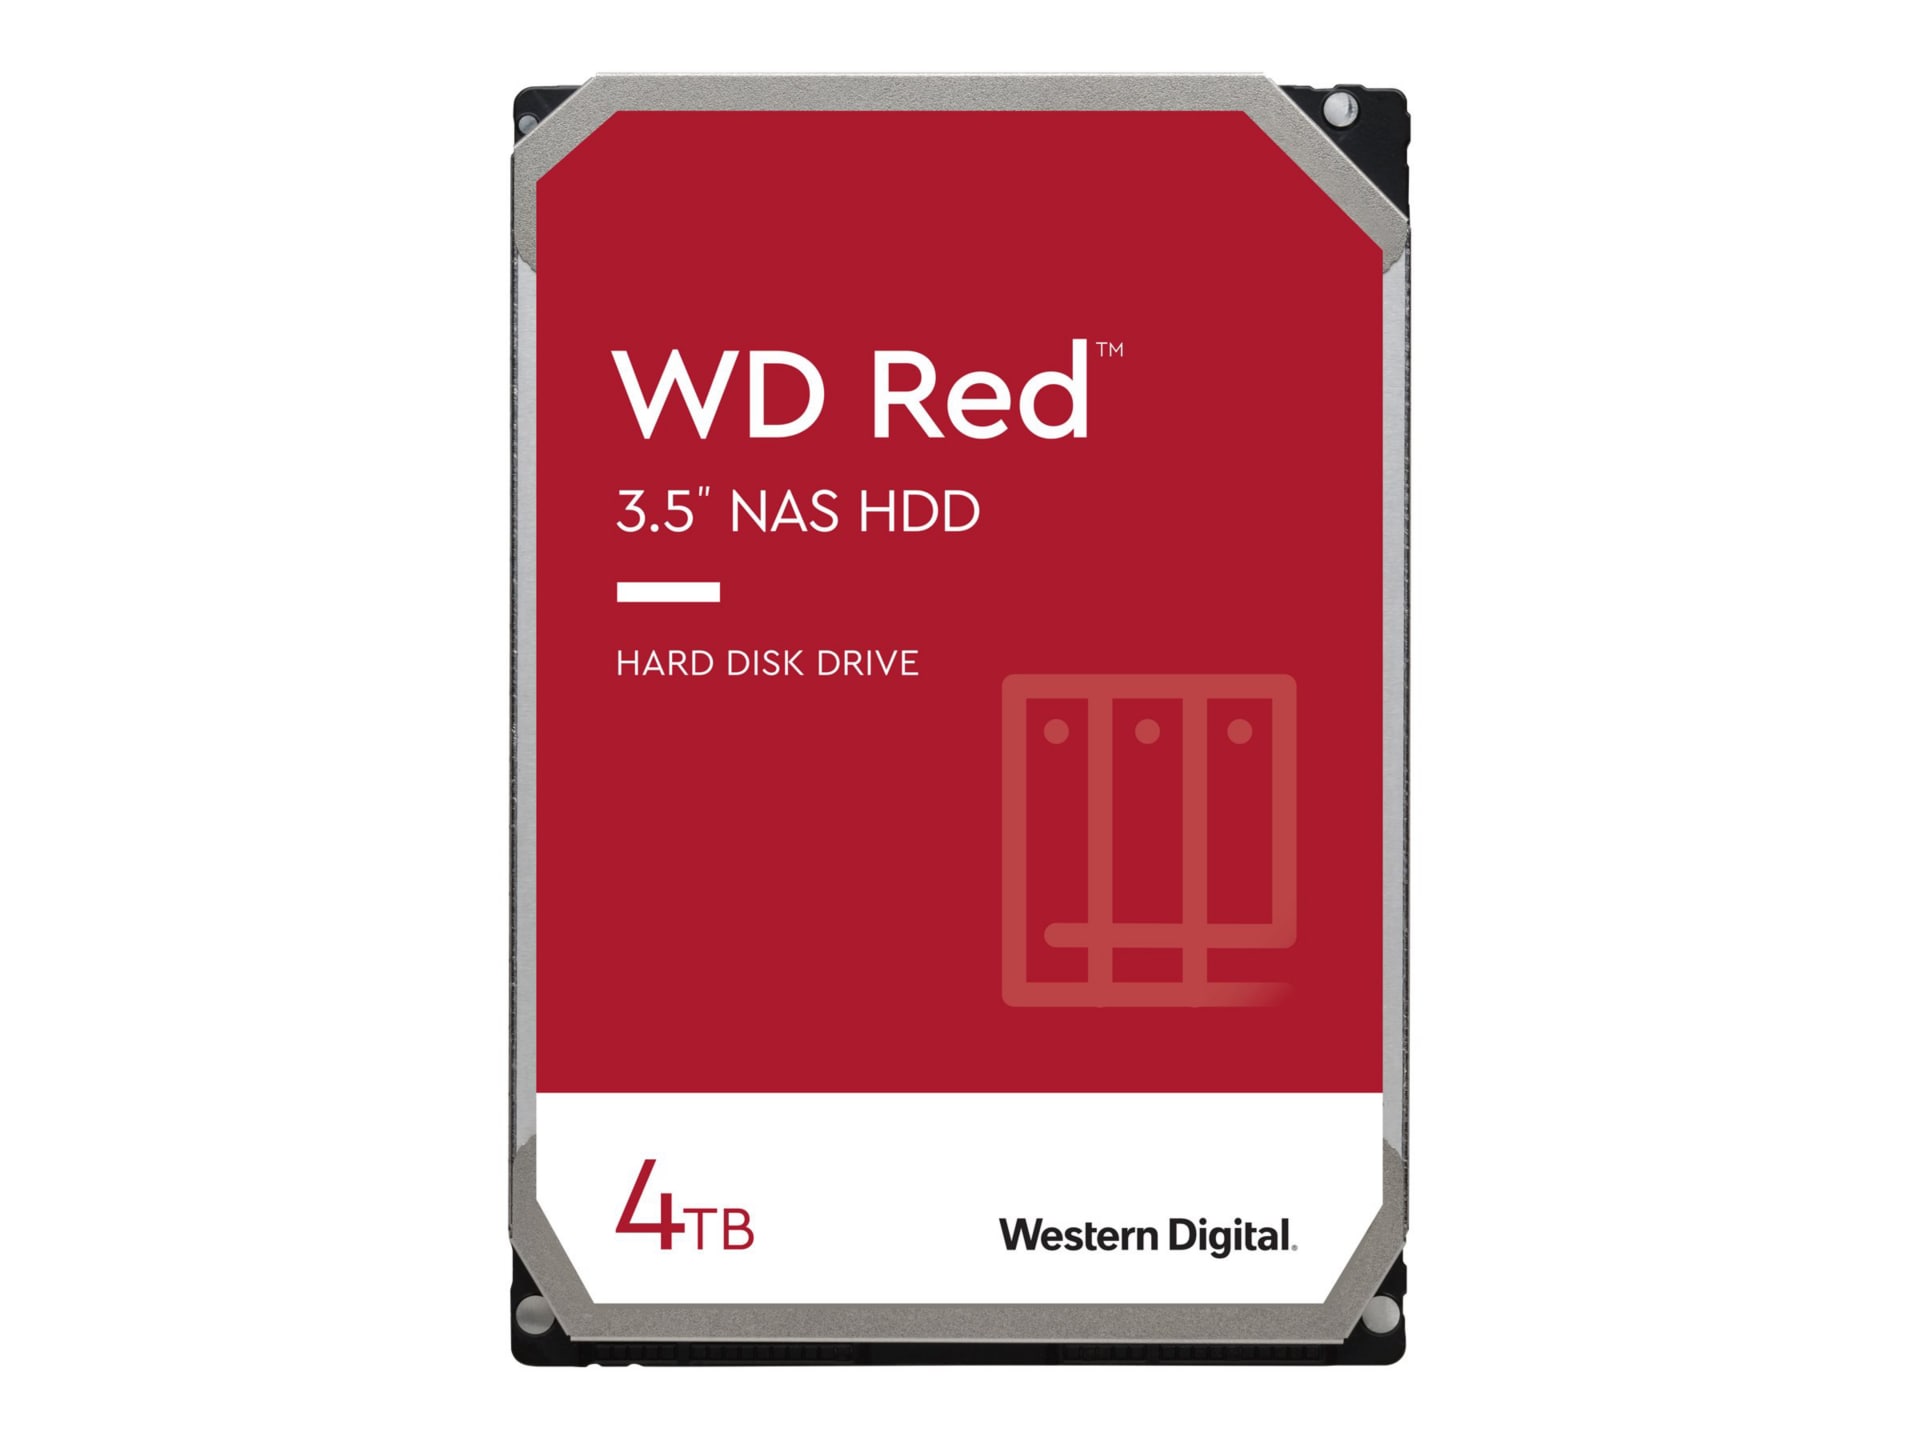 WD Red WD40EFAX - hard drive - TB - SATA 6Gb/s - WD40EFAX - - CDW.com